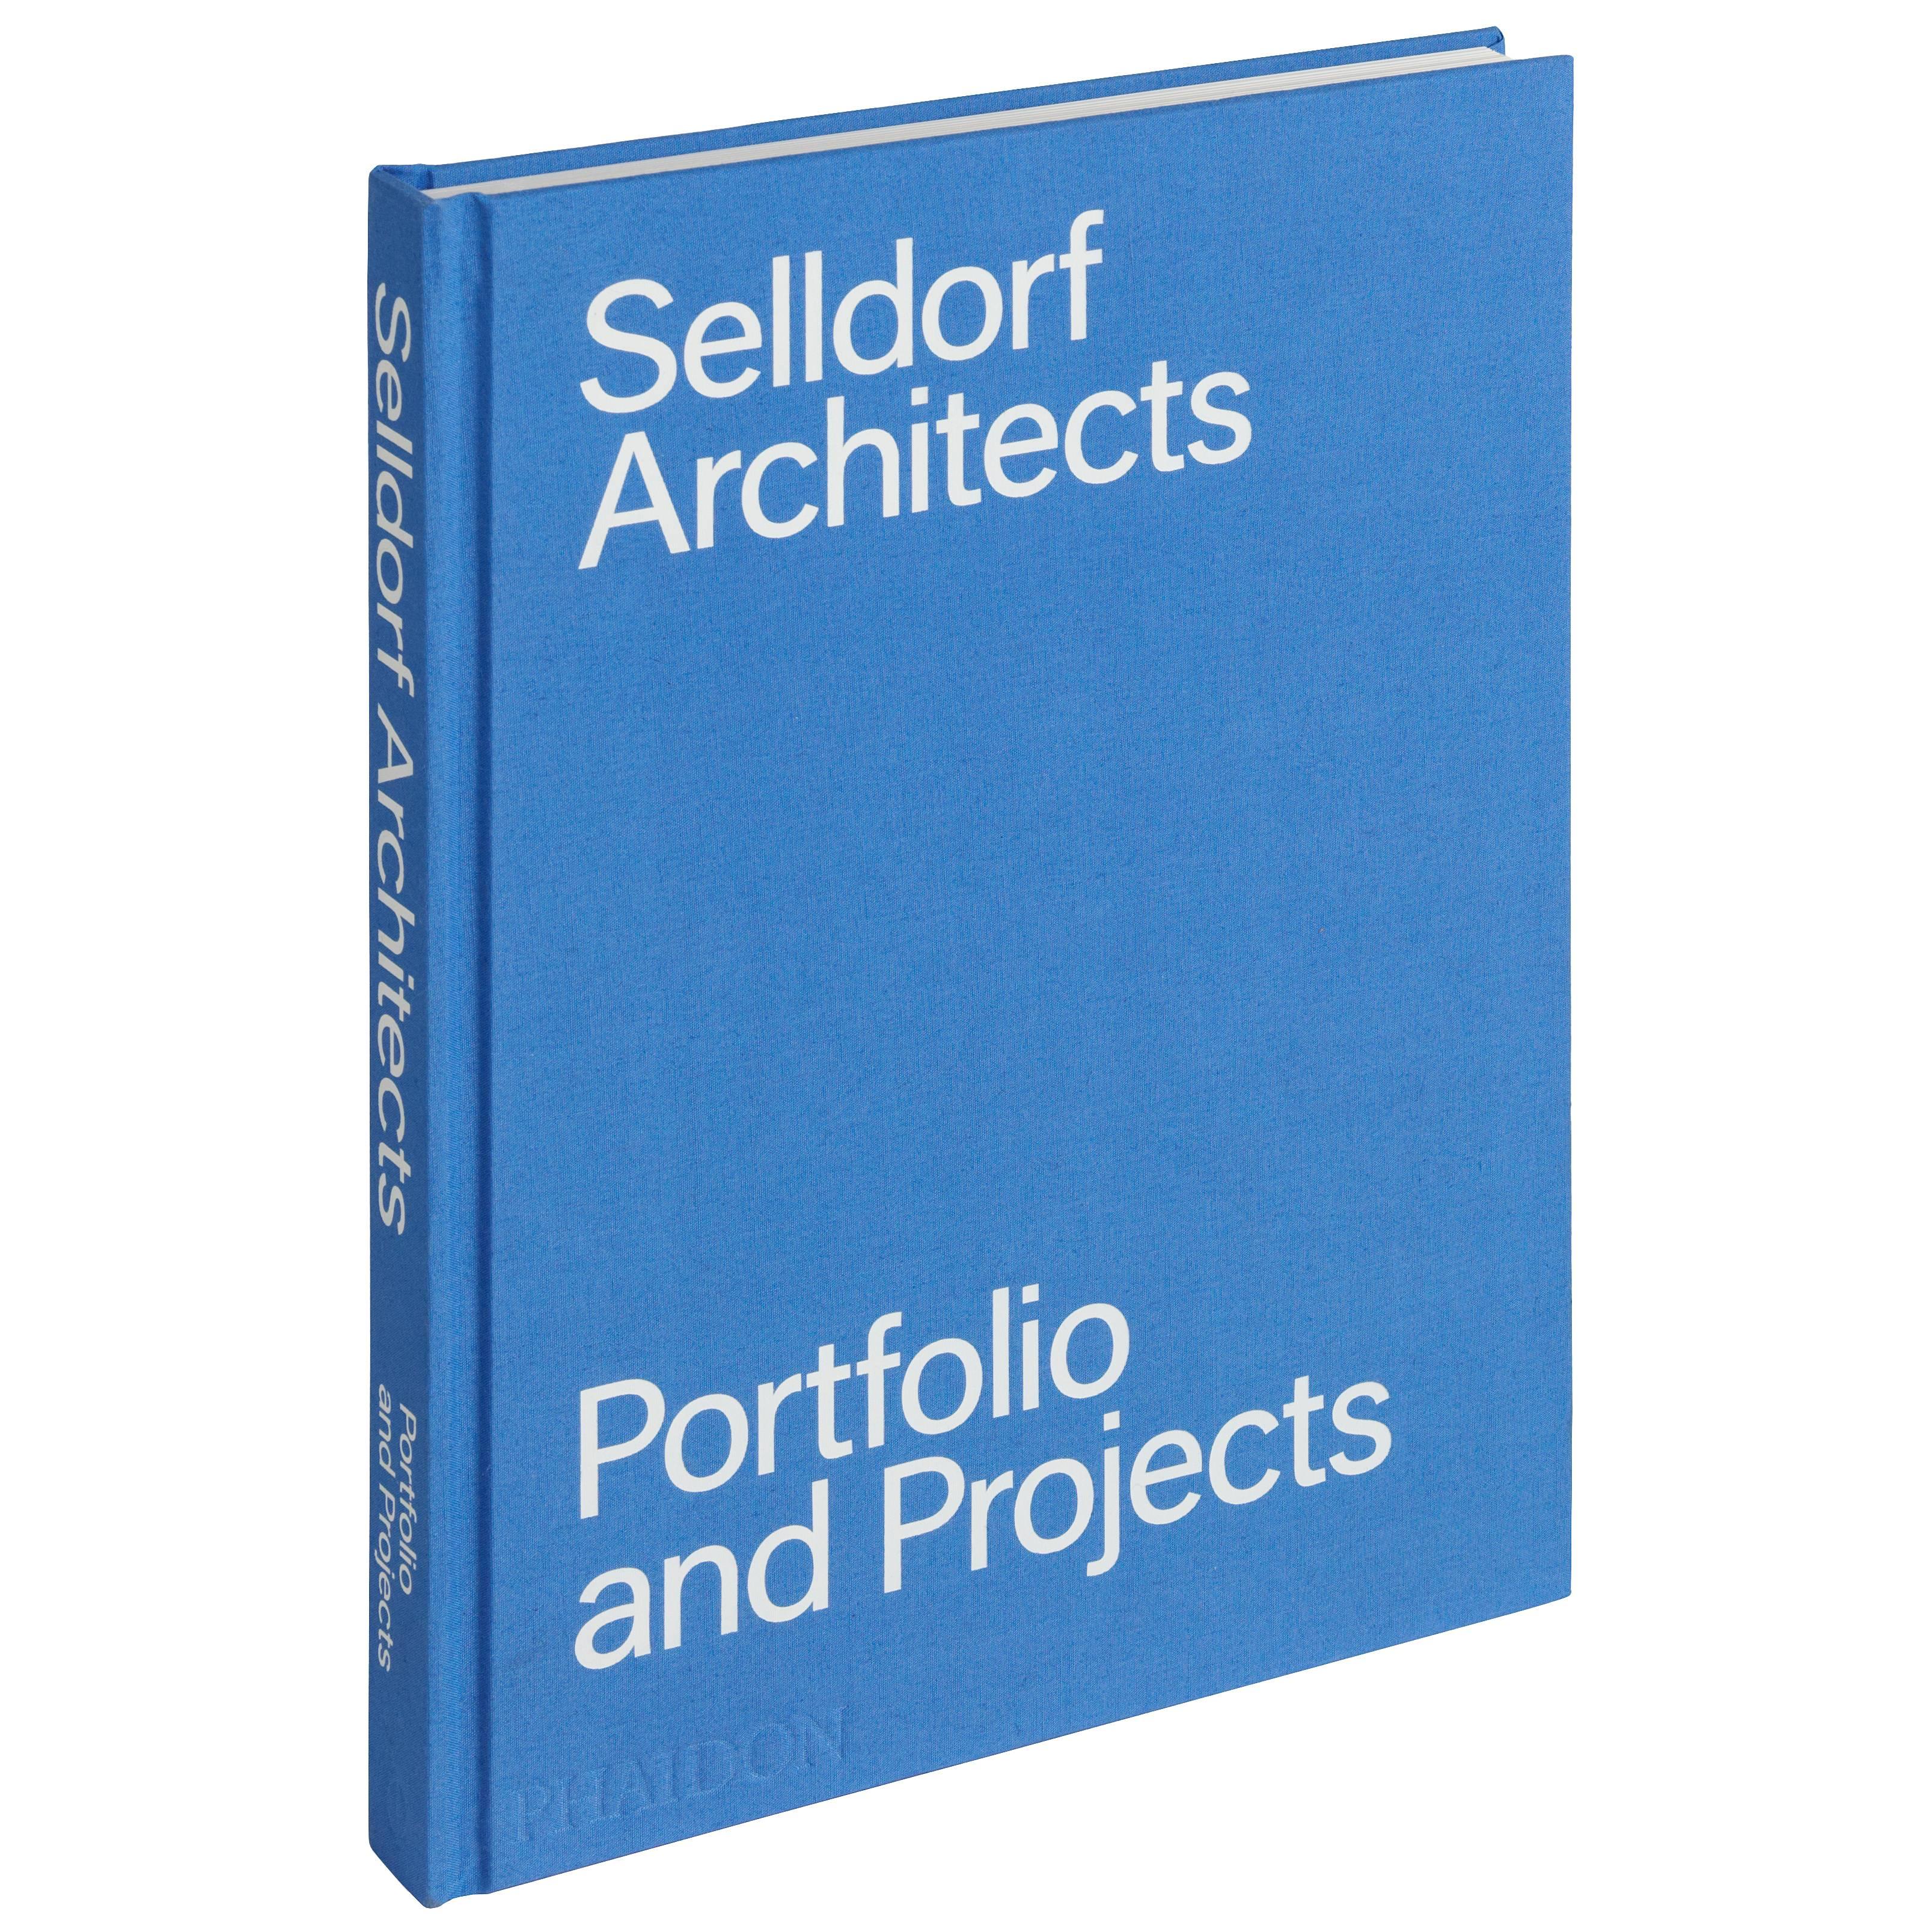 Livre « Portfolio and Projects » (Portfolio et projets d'architectes Selldorf)